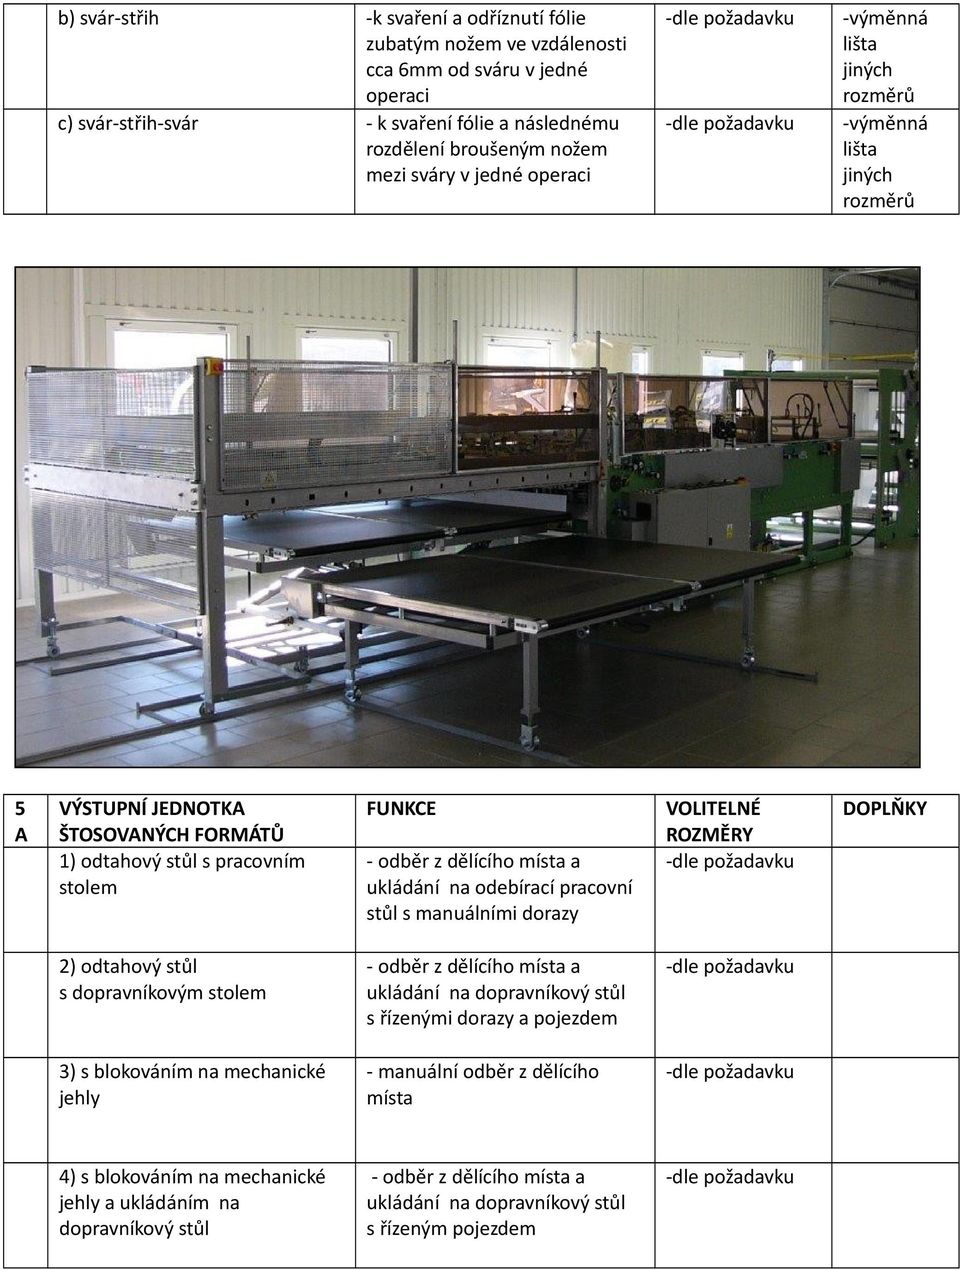 1) odtahový stůl s pracovním stolem ukládání na odebírací pracovní stůl s manuálními dorazy 2) odtahový stůl s dopravníkovým stolem s řízenými dorazy a